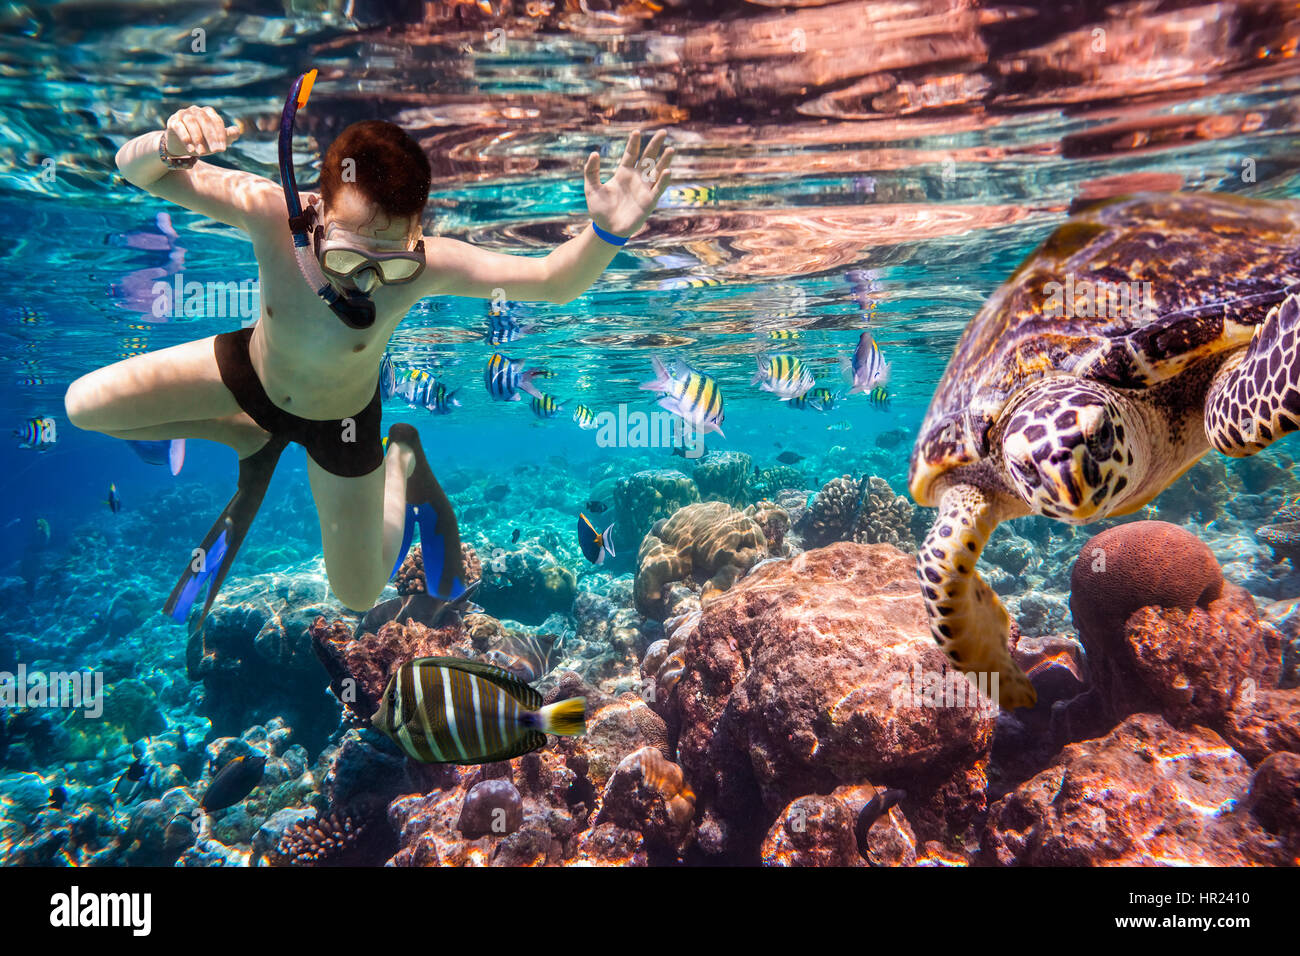 Snorkeler diving le long de la barrière de cerveau. Les récifs coralliens de l'océan Indien aux Maldives. Banque D'Images